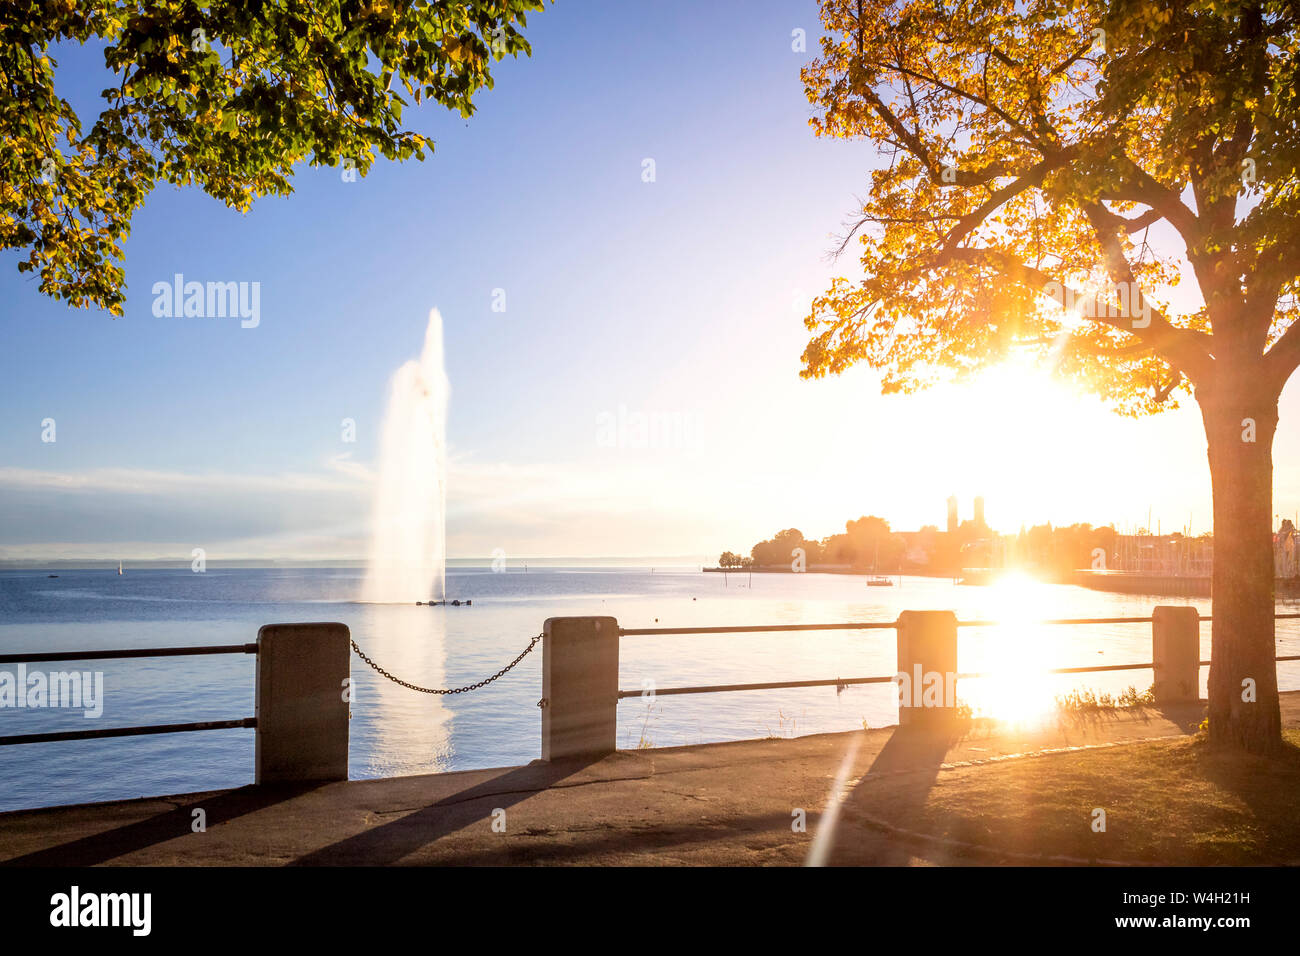 Fontaine de l'abbaye et le lac de Constance, Friedrichshafen, Allemagne Banque D'Images